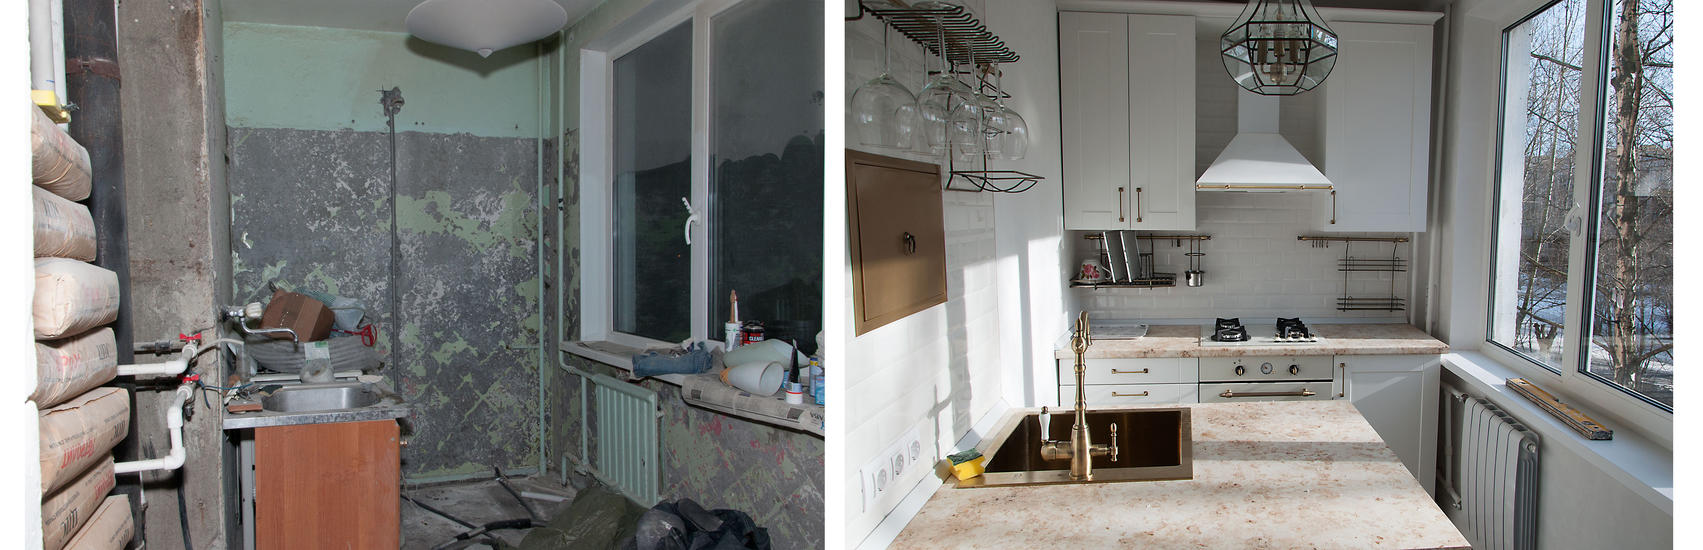 Ремонт квартир фото до и после